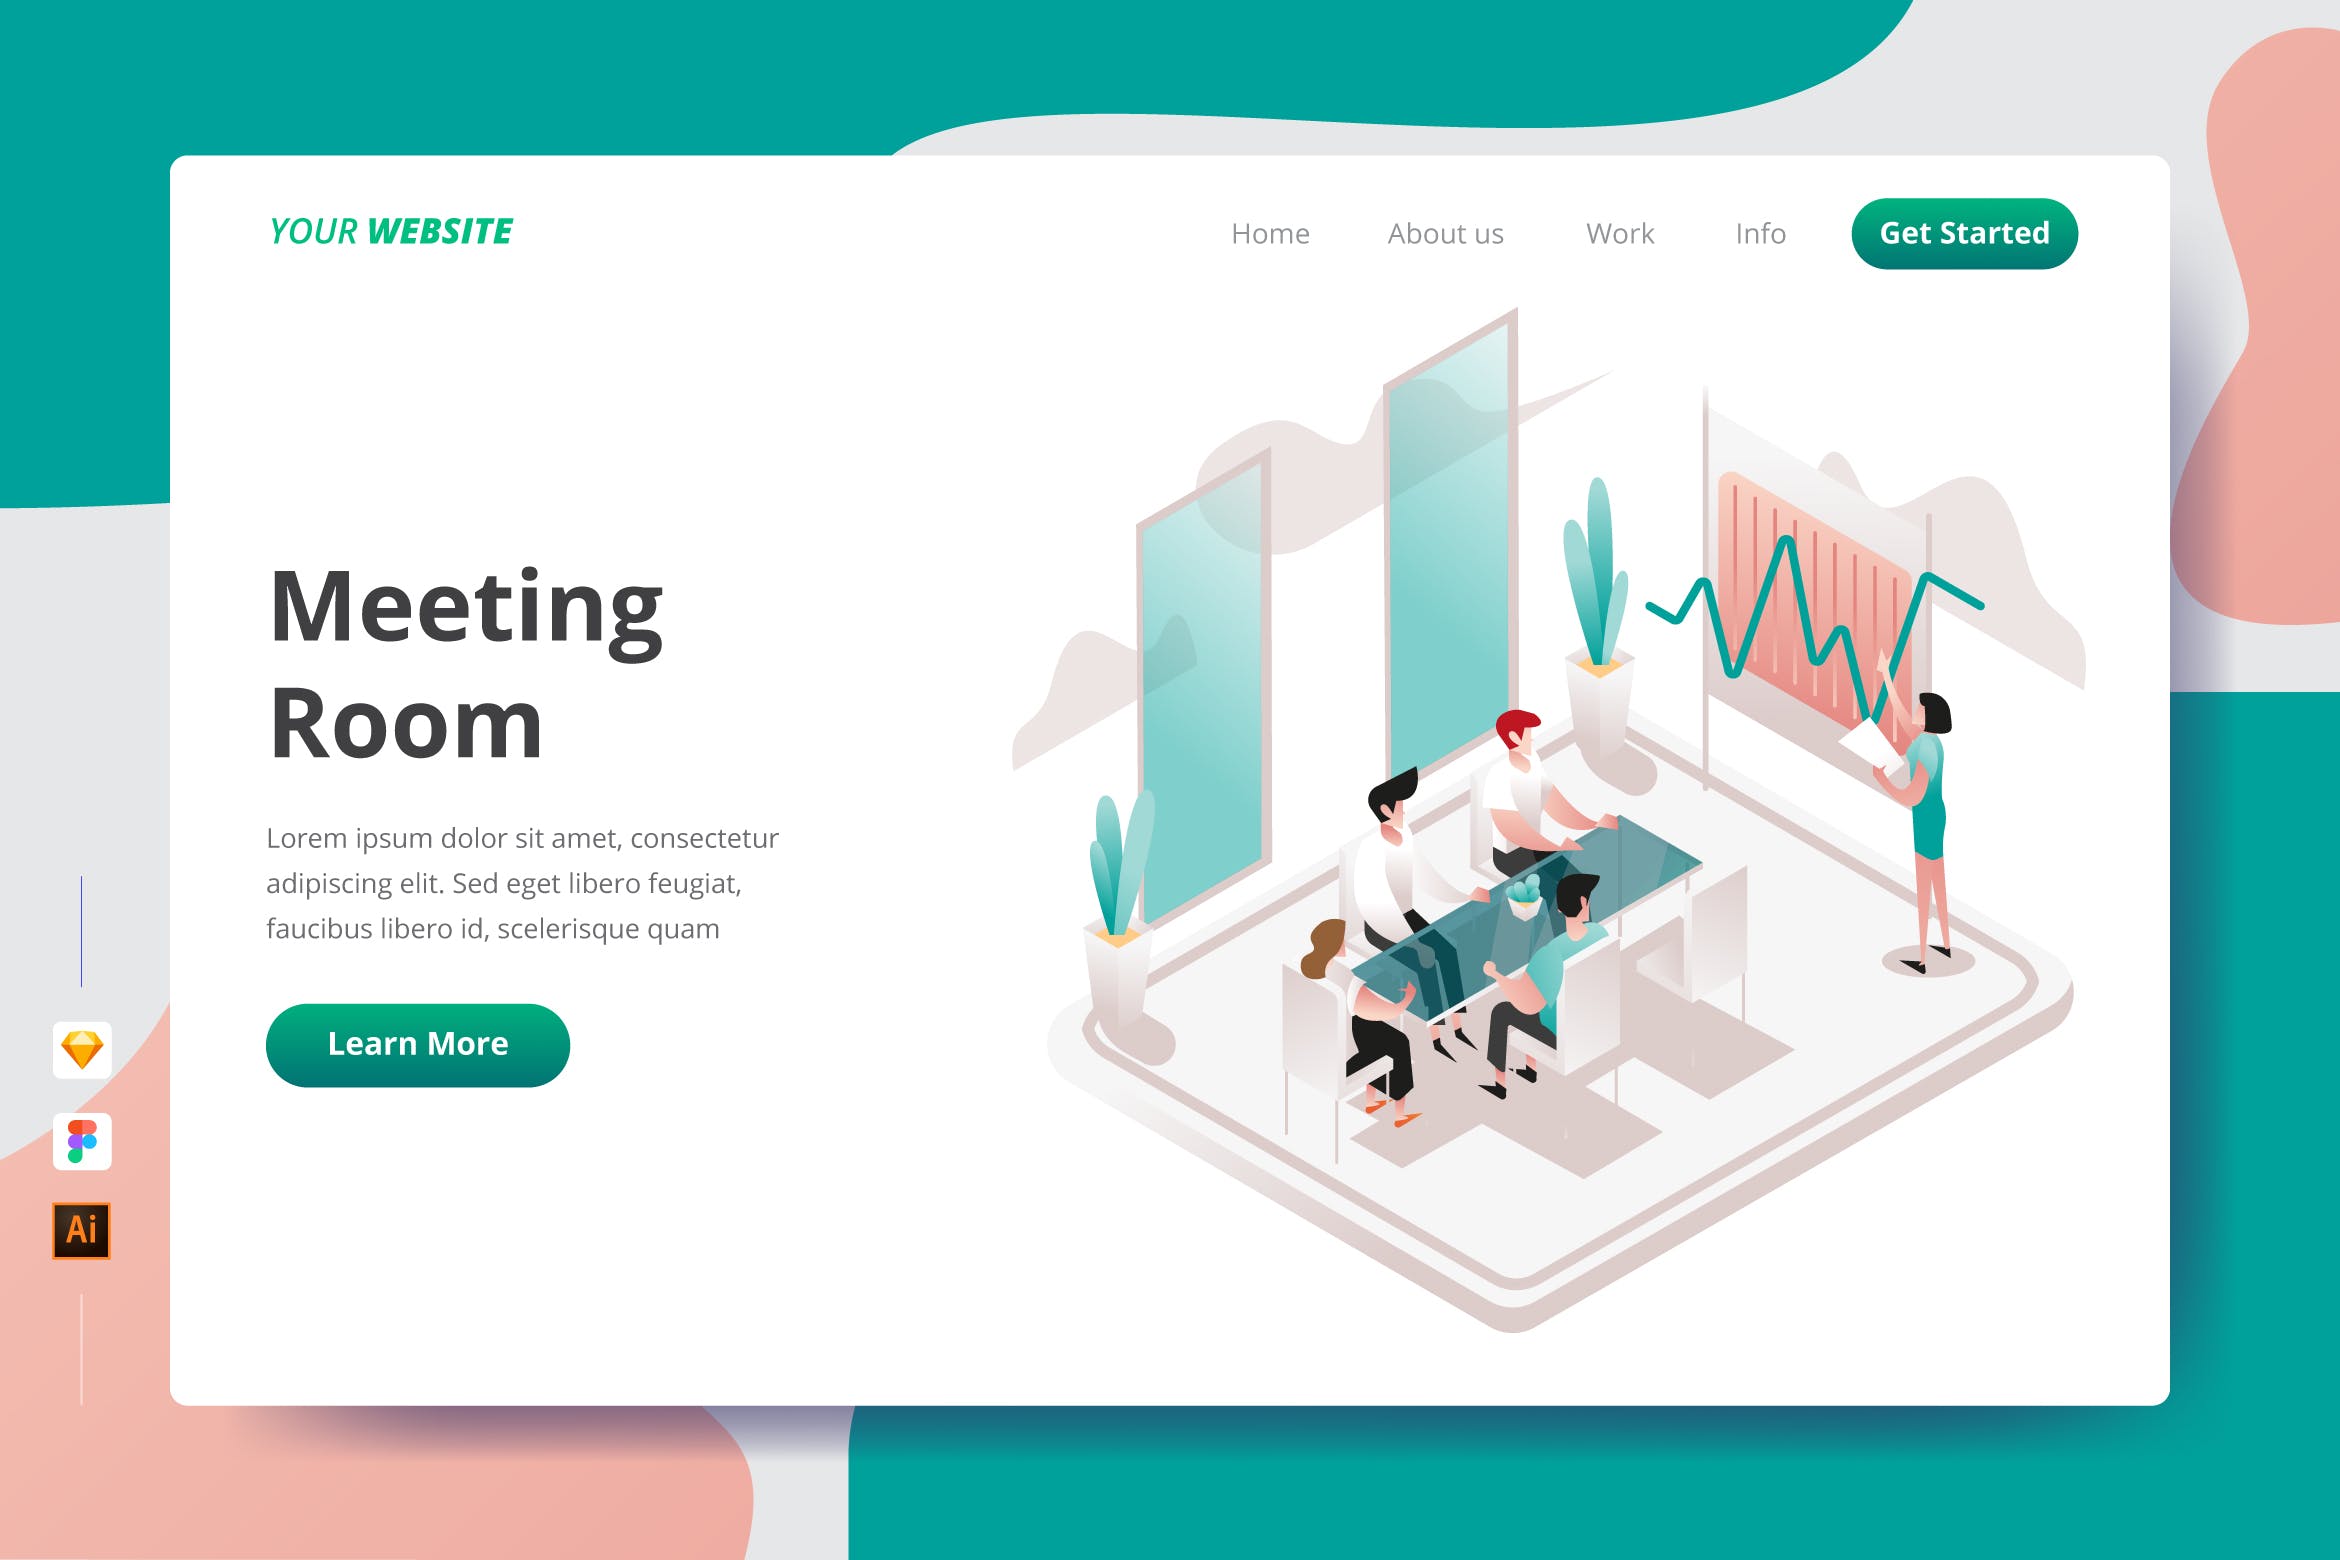 会议室场景插画网站着陆页设计第一素材精选模板 Meeting Room – Landing Page插图